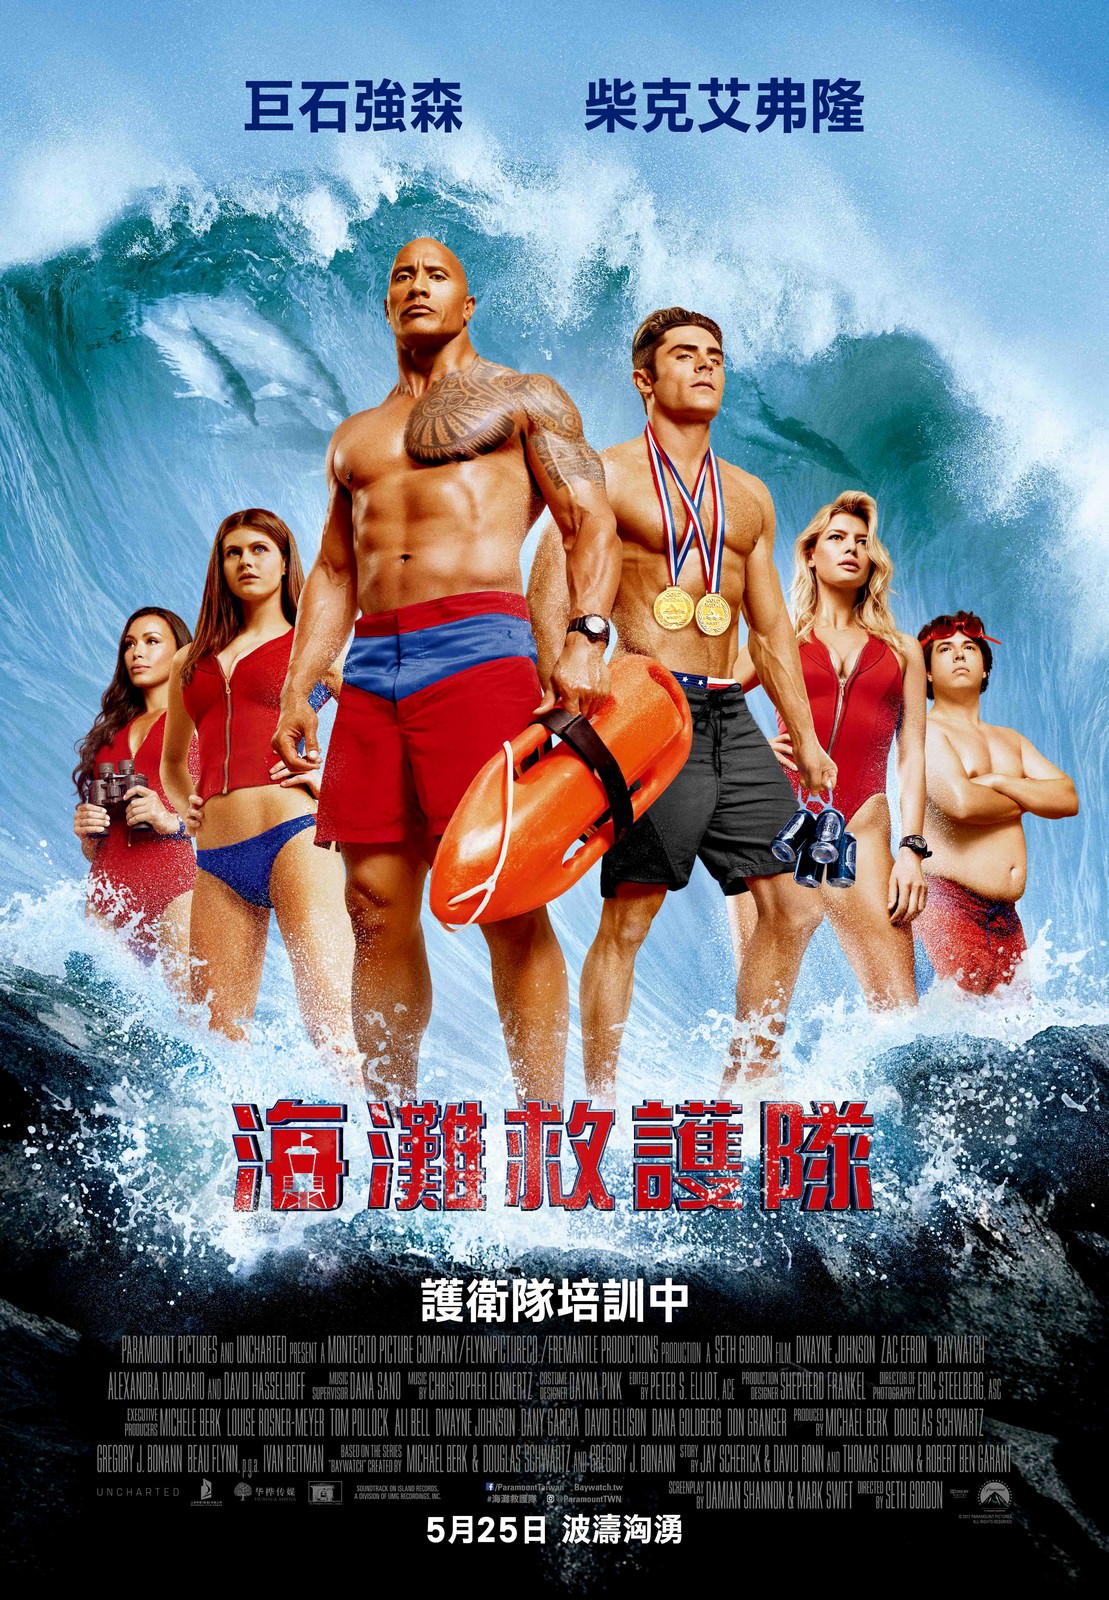 Movie, Baywatch(美國, 2017年) / 海灘救護隊(台灣) / 沙灘拯救隊(香港) / 海滩游侠(網路), 電影海報, 台灣